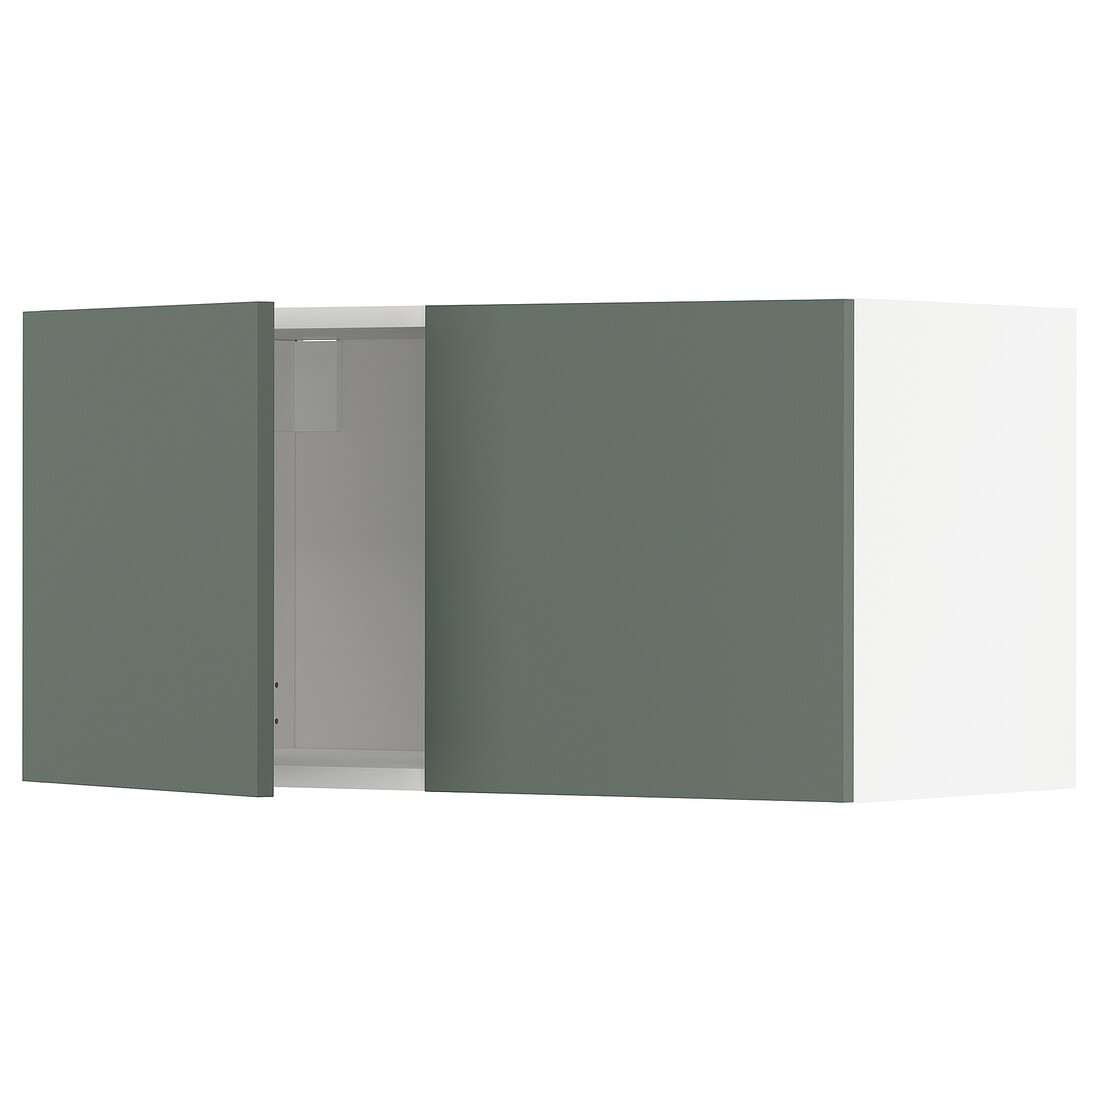 METOD МЕТОД Навесной шкаф с 2 дверями, белый / Bodarp серо-зеленый, 80x40 см